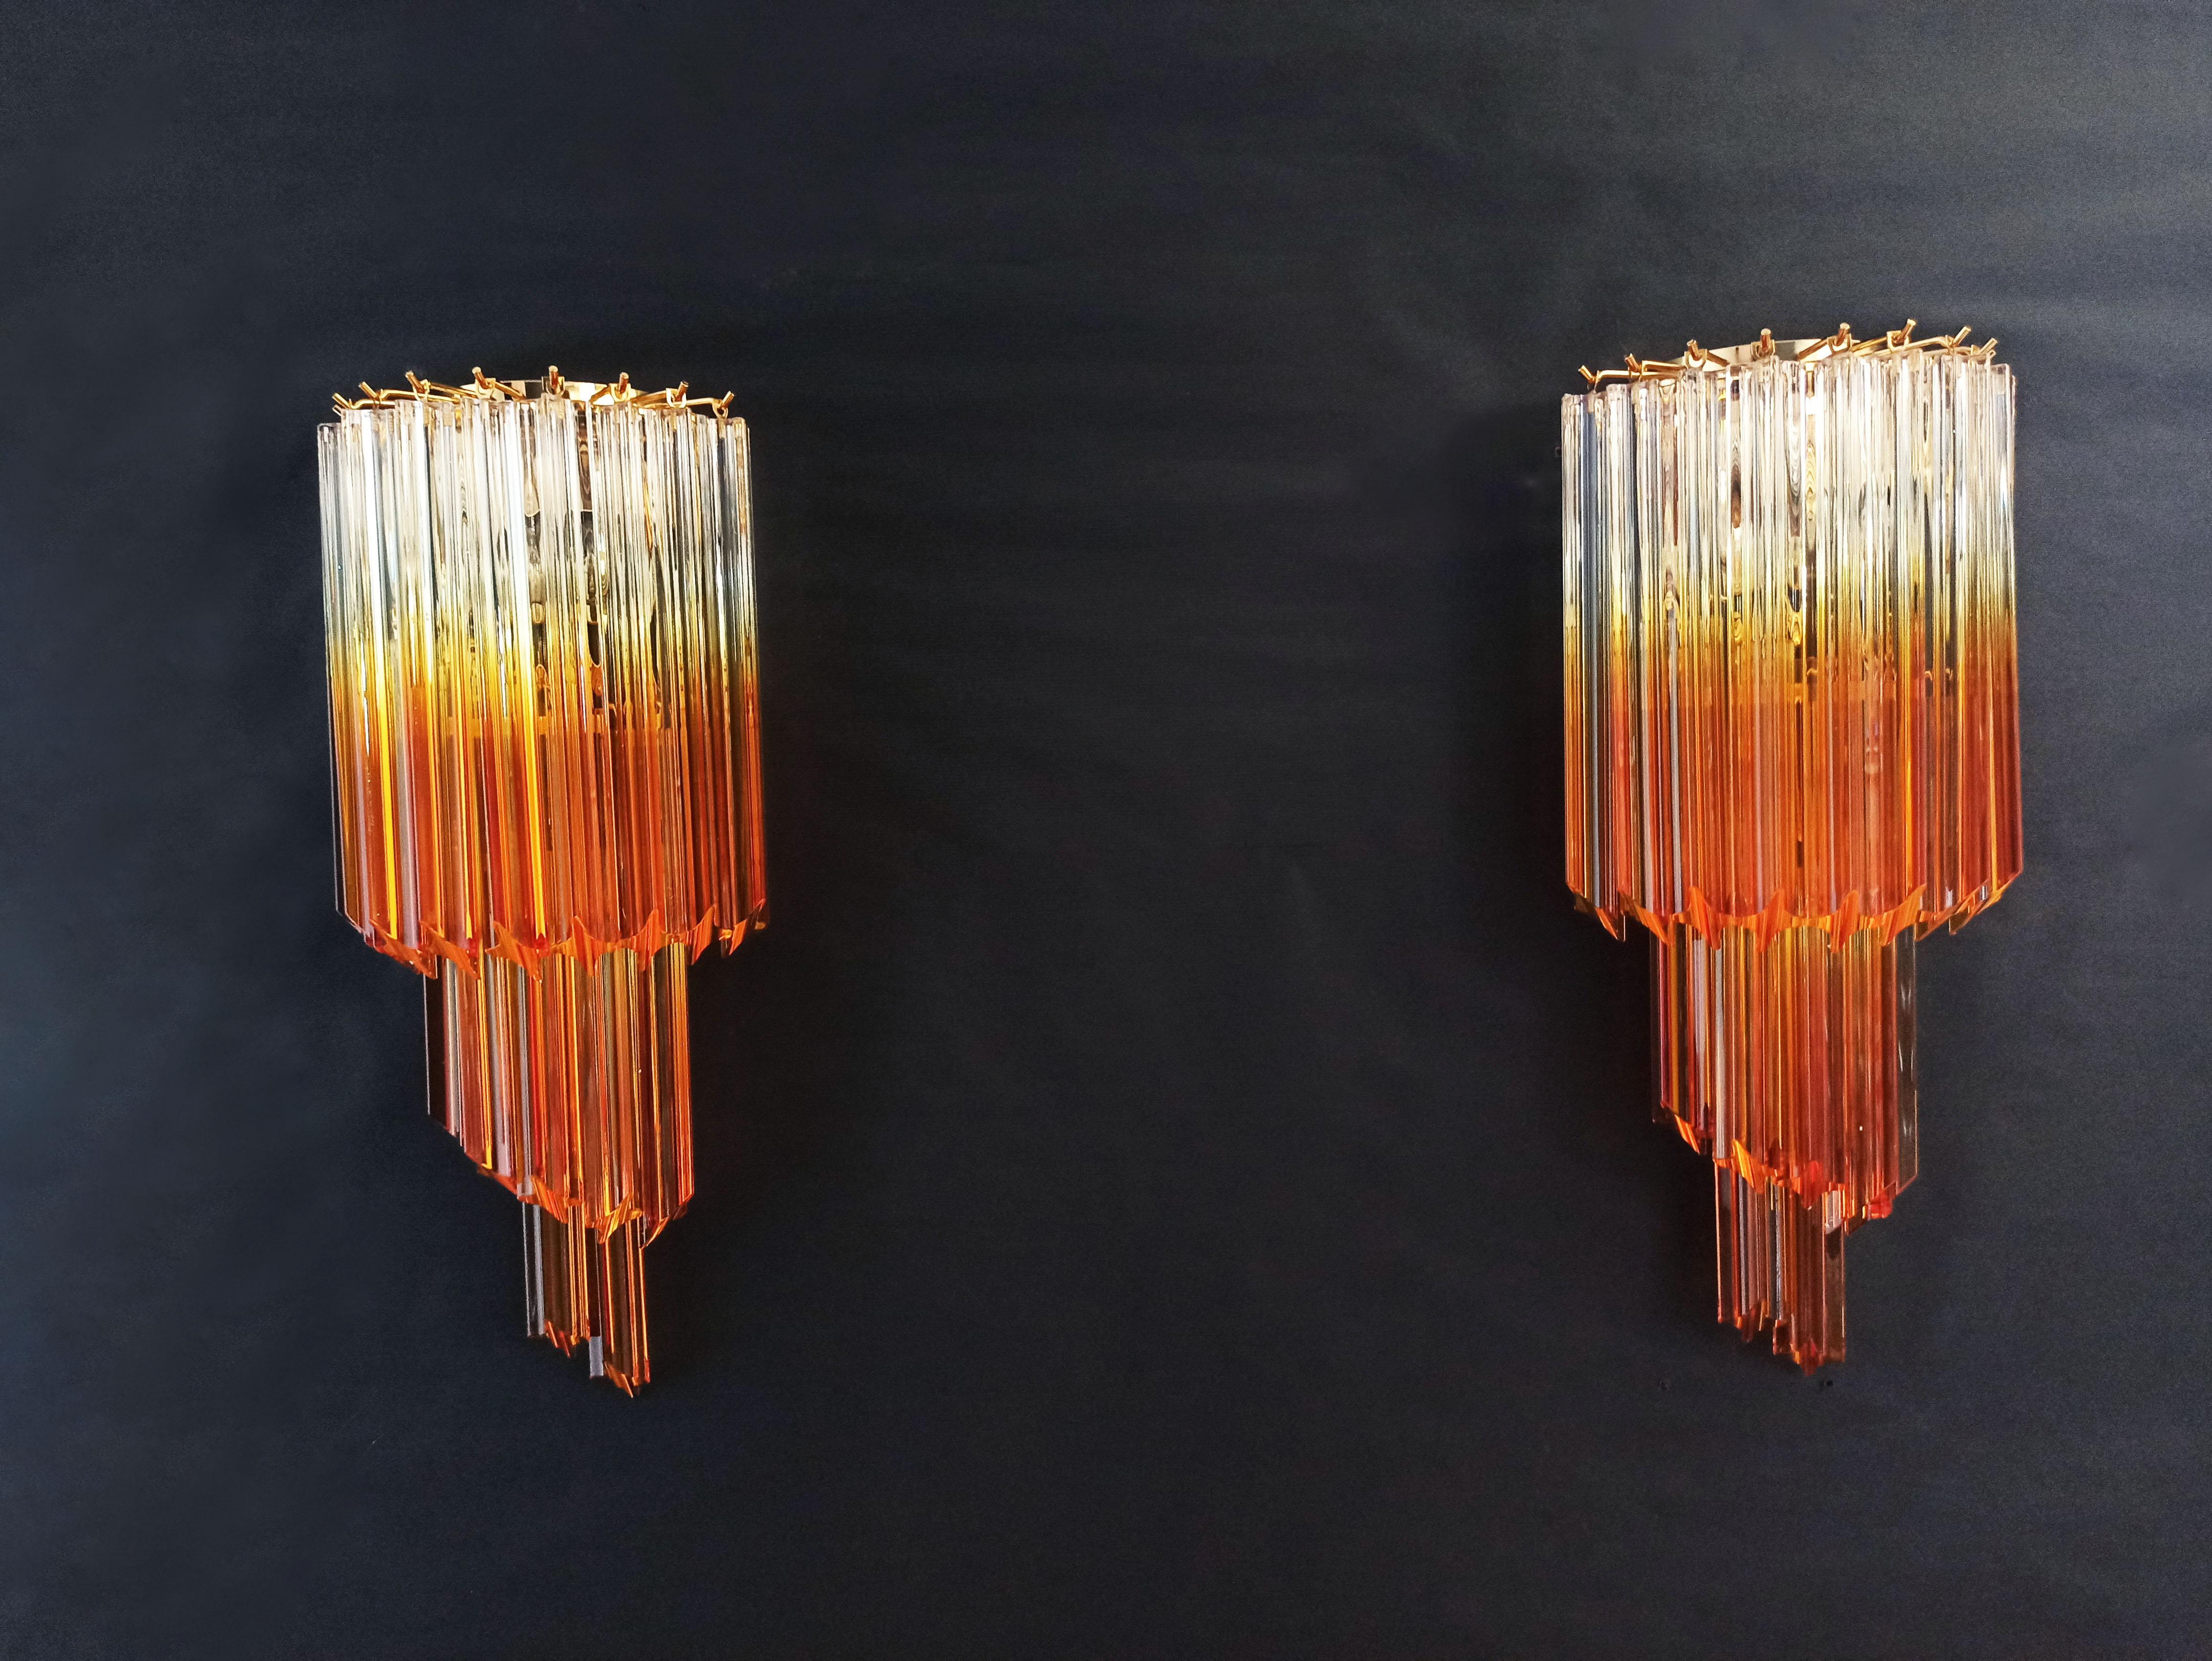 Fantastisches Paar von Vintage Murano Wandleuchte von 16 Murano-Kristall Prisma (quadriedri) für jede Anwendung in einem goldenen Metallrahmen gemacht. Die Form dieser Leuchte ist spiralförmig. Die Gläser haben eine besondere Farbe, transparent mit